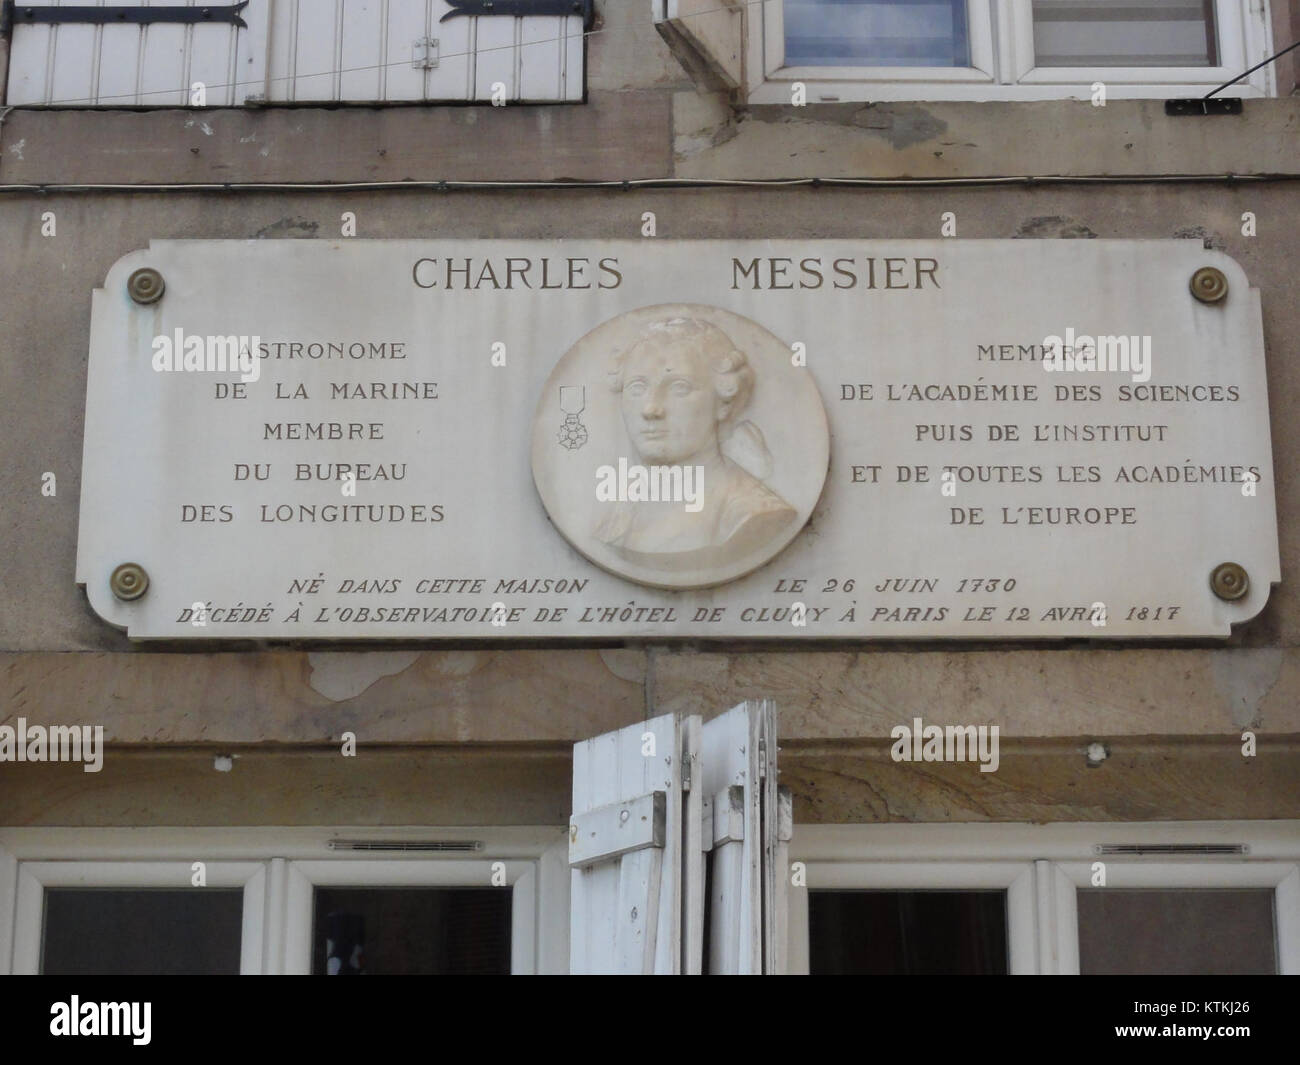 Badonviller (M et M) maison Charles Messier, plaque Stock Photo